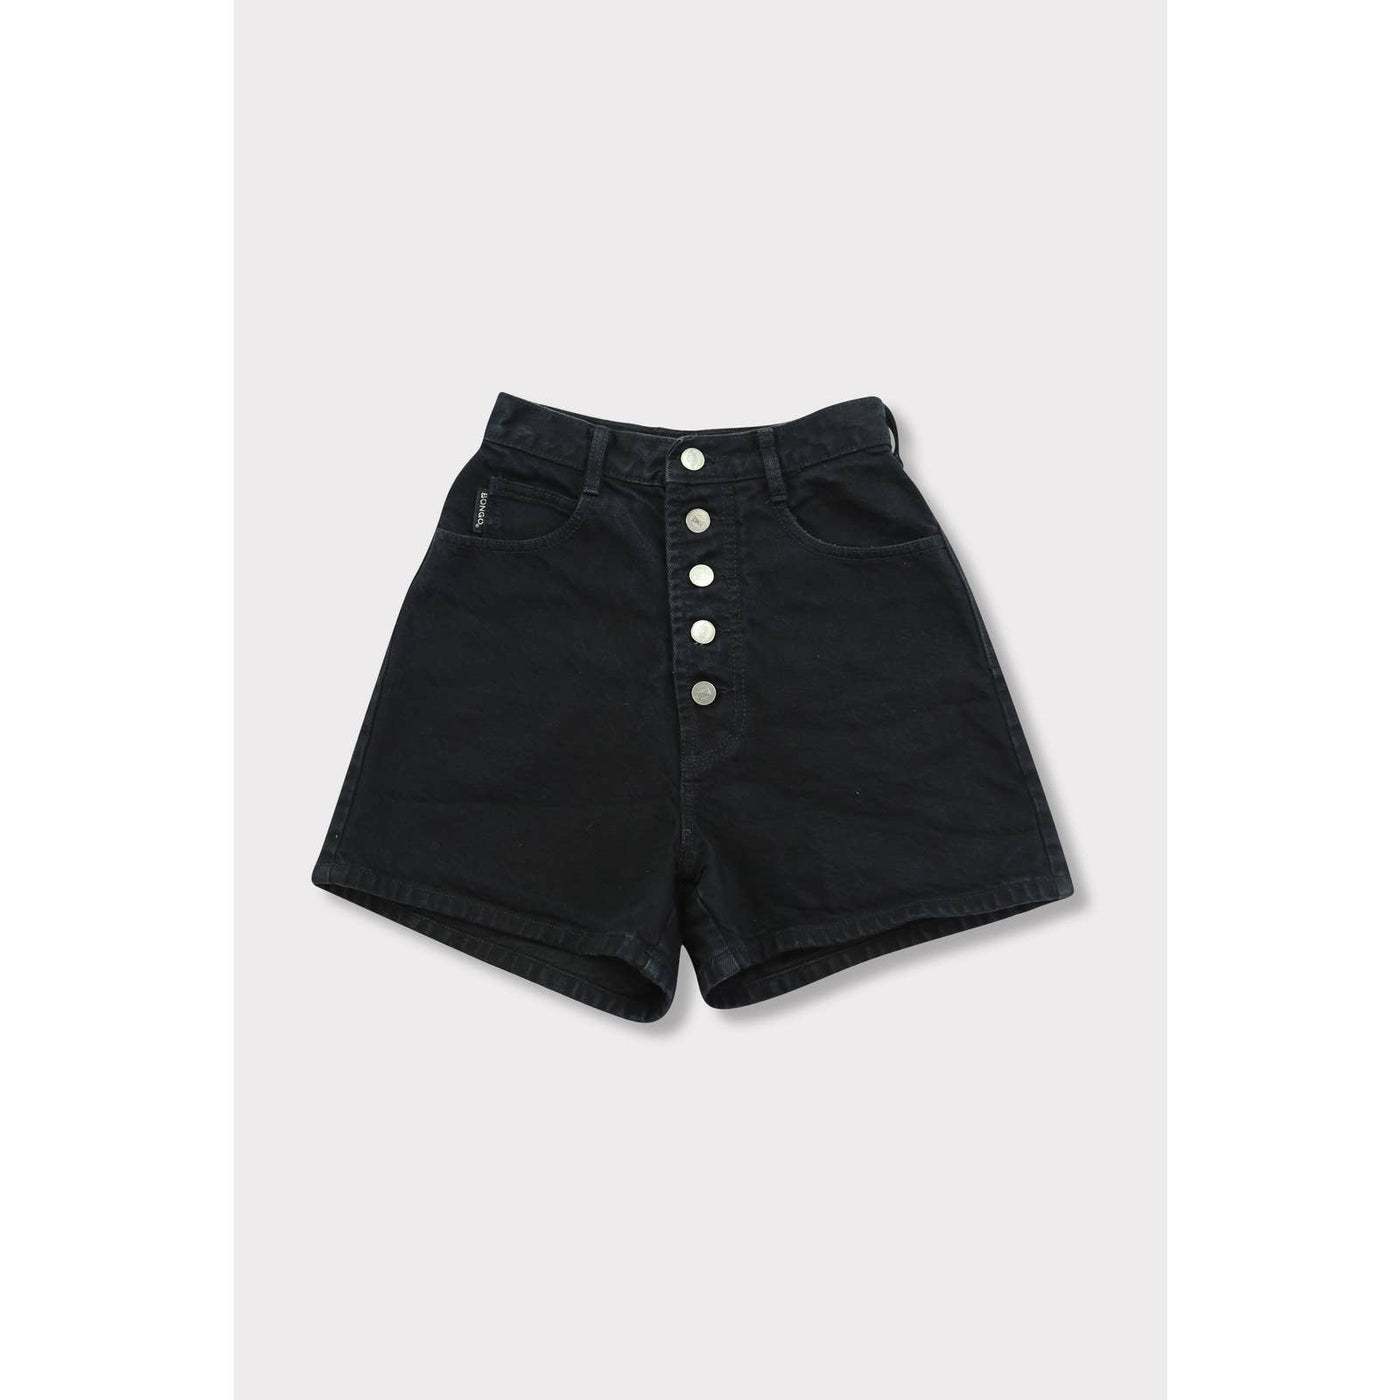 Vintage 90’s Bongo Black High Waisted Shorts